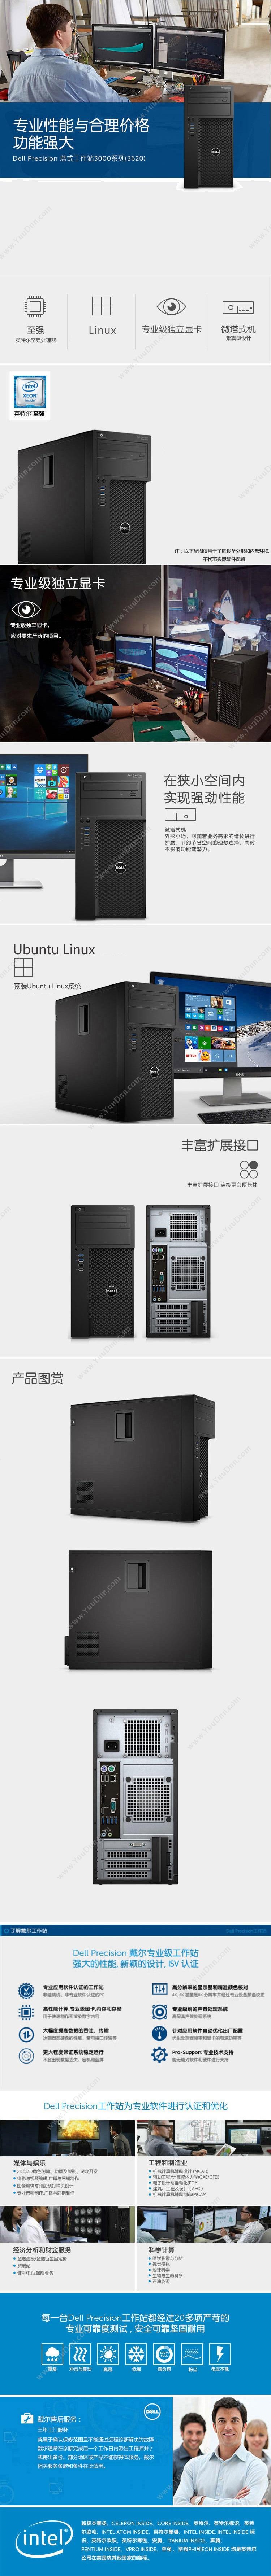 戴尔 Dell Precision T3620  i7-7700 /8GB*2/1TB +256GB/290W/（黑）  键盘/鼠标/P620 2G/3年保修 台式工作站